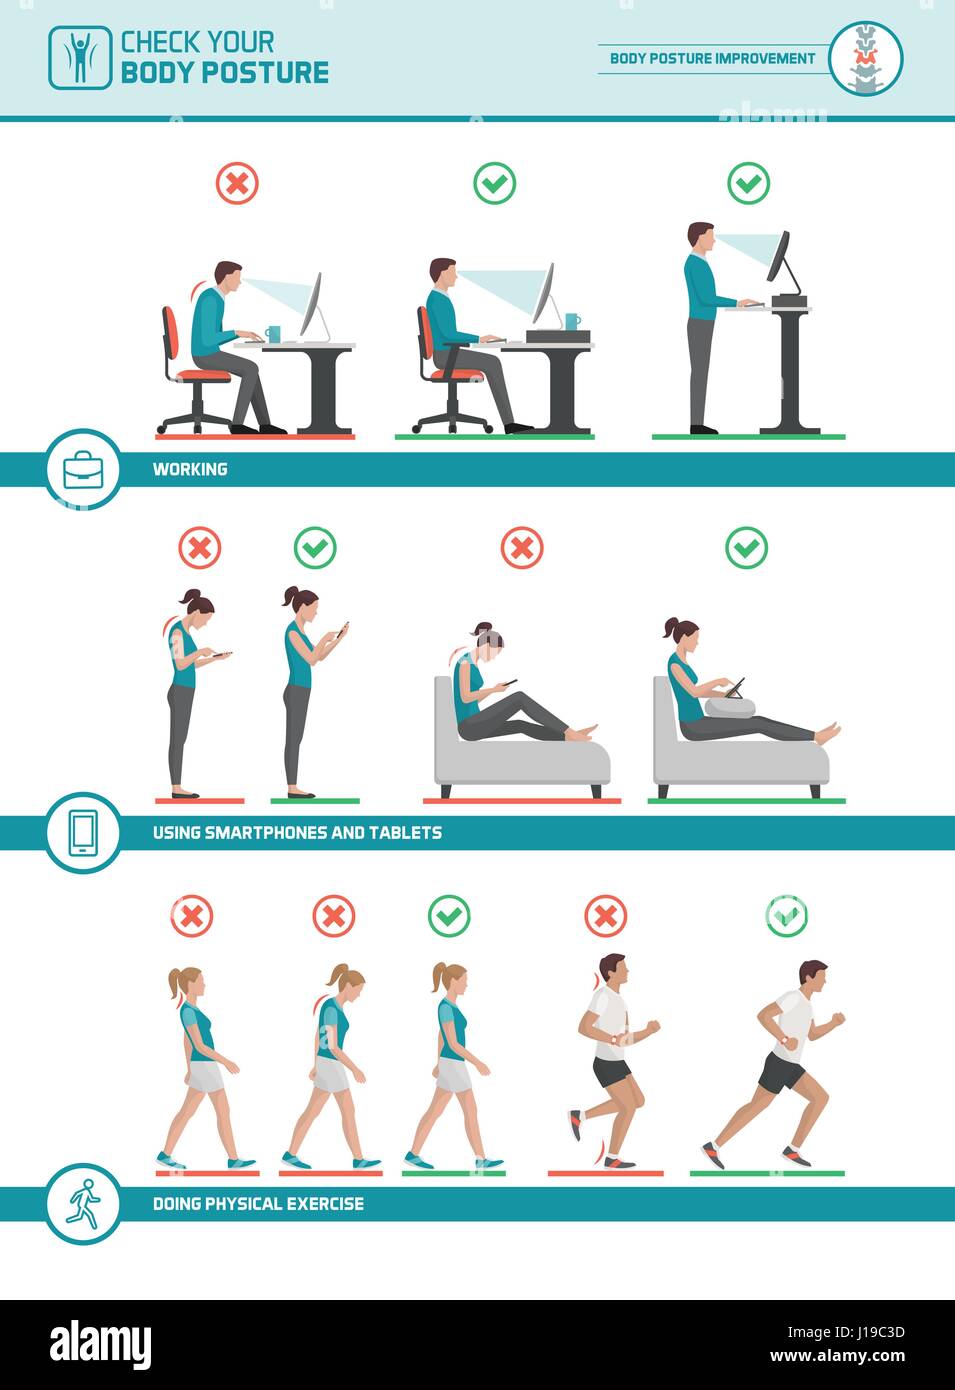 Körper-Ergonomie-Infografik: verbessern Sie Ihre Körperhaltung beim Arbeiten am Schreibtisch, Nutzung von Mobilgeräten, Walking- und Laufstrecke Stock Vektor